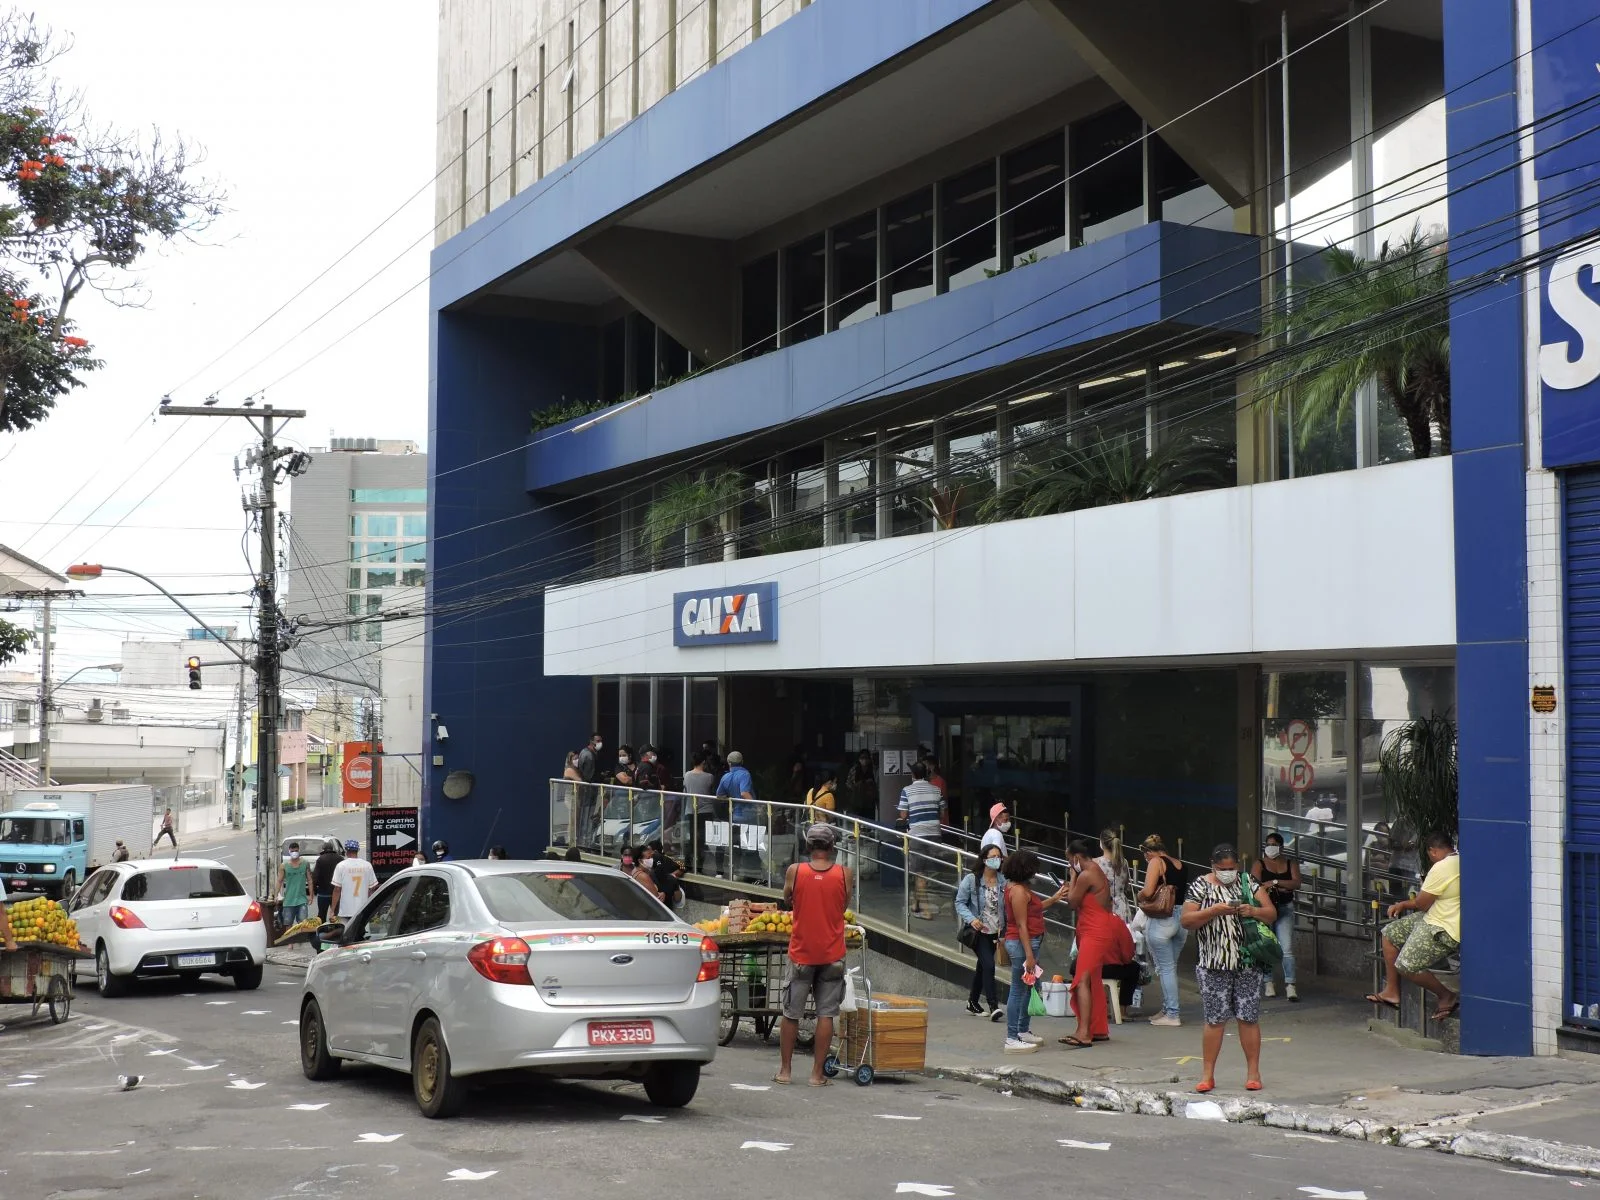 Cerca de 10 funcionários de agências bancárias testaram positivo para Covid-19 em Vitória da Conquista